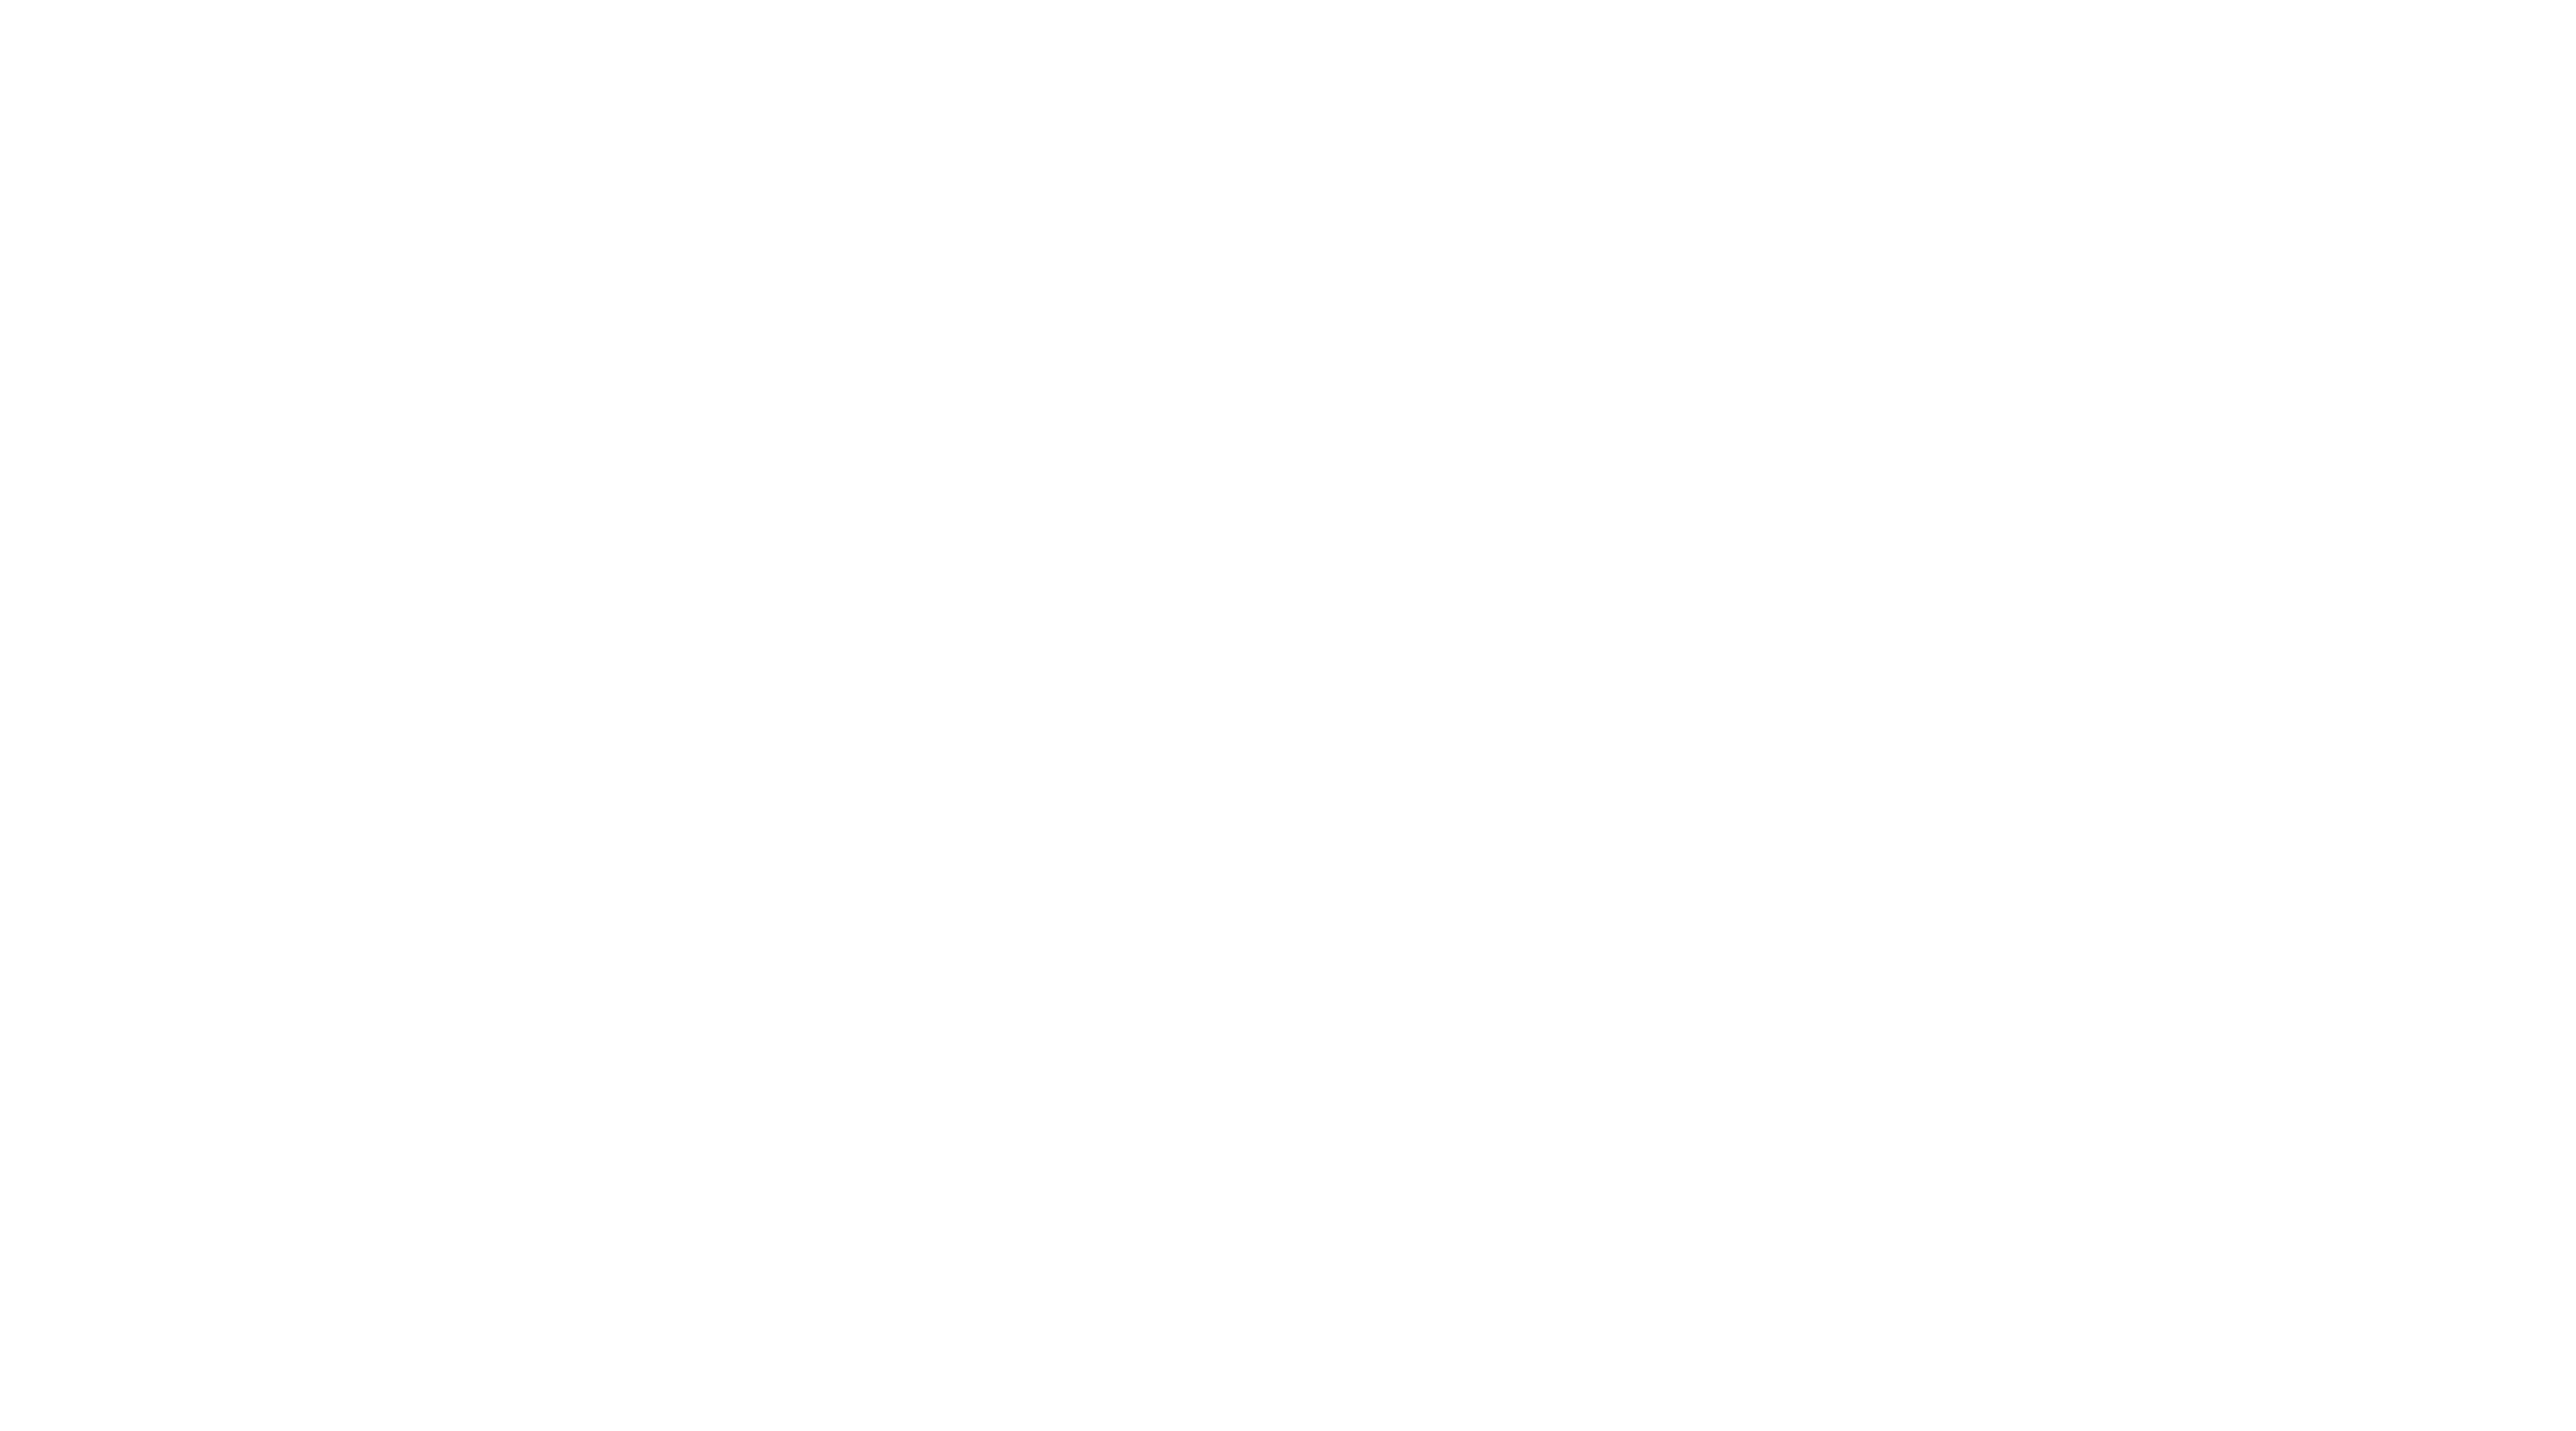 Lace Basketball Logo - The League | Lace 'Em Up - Basketball Skills Training Utah